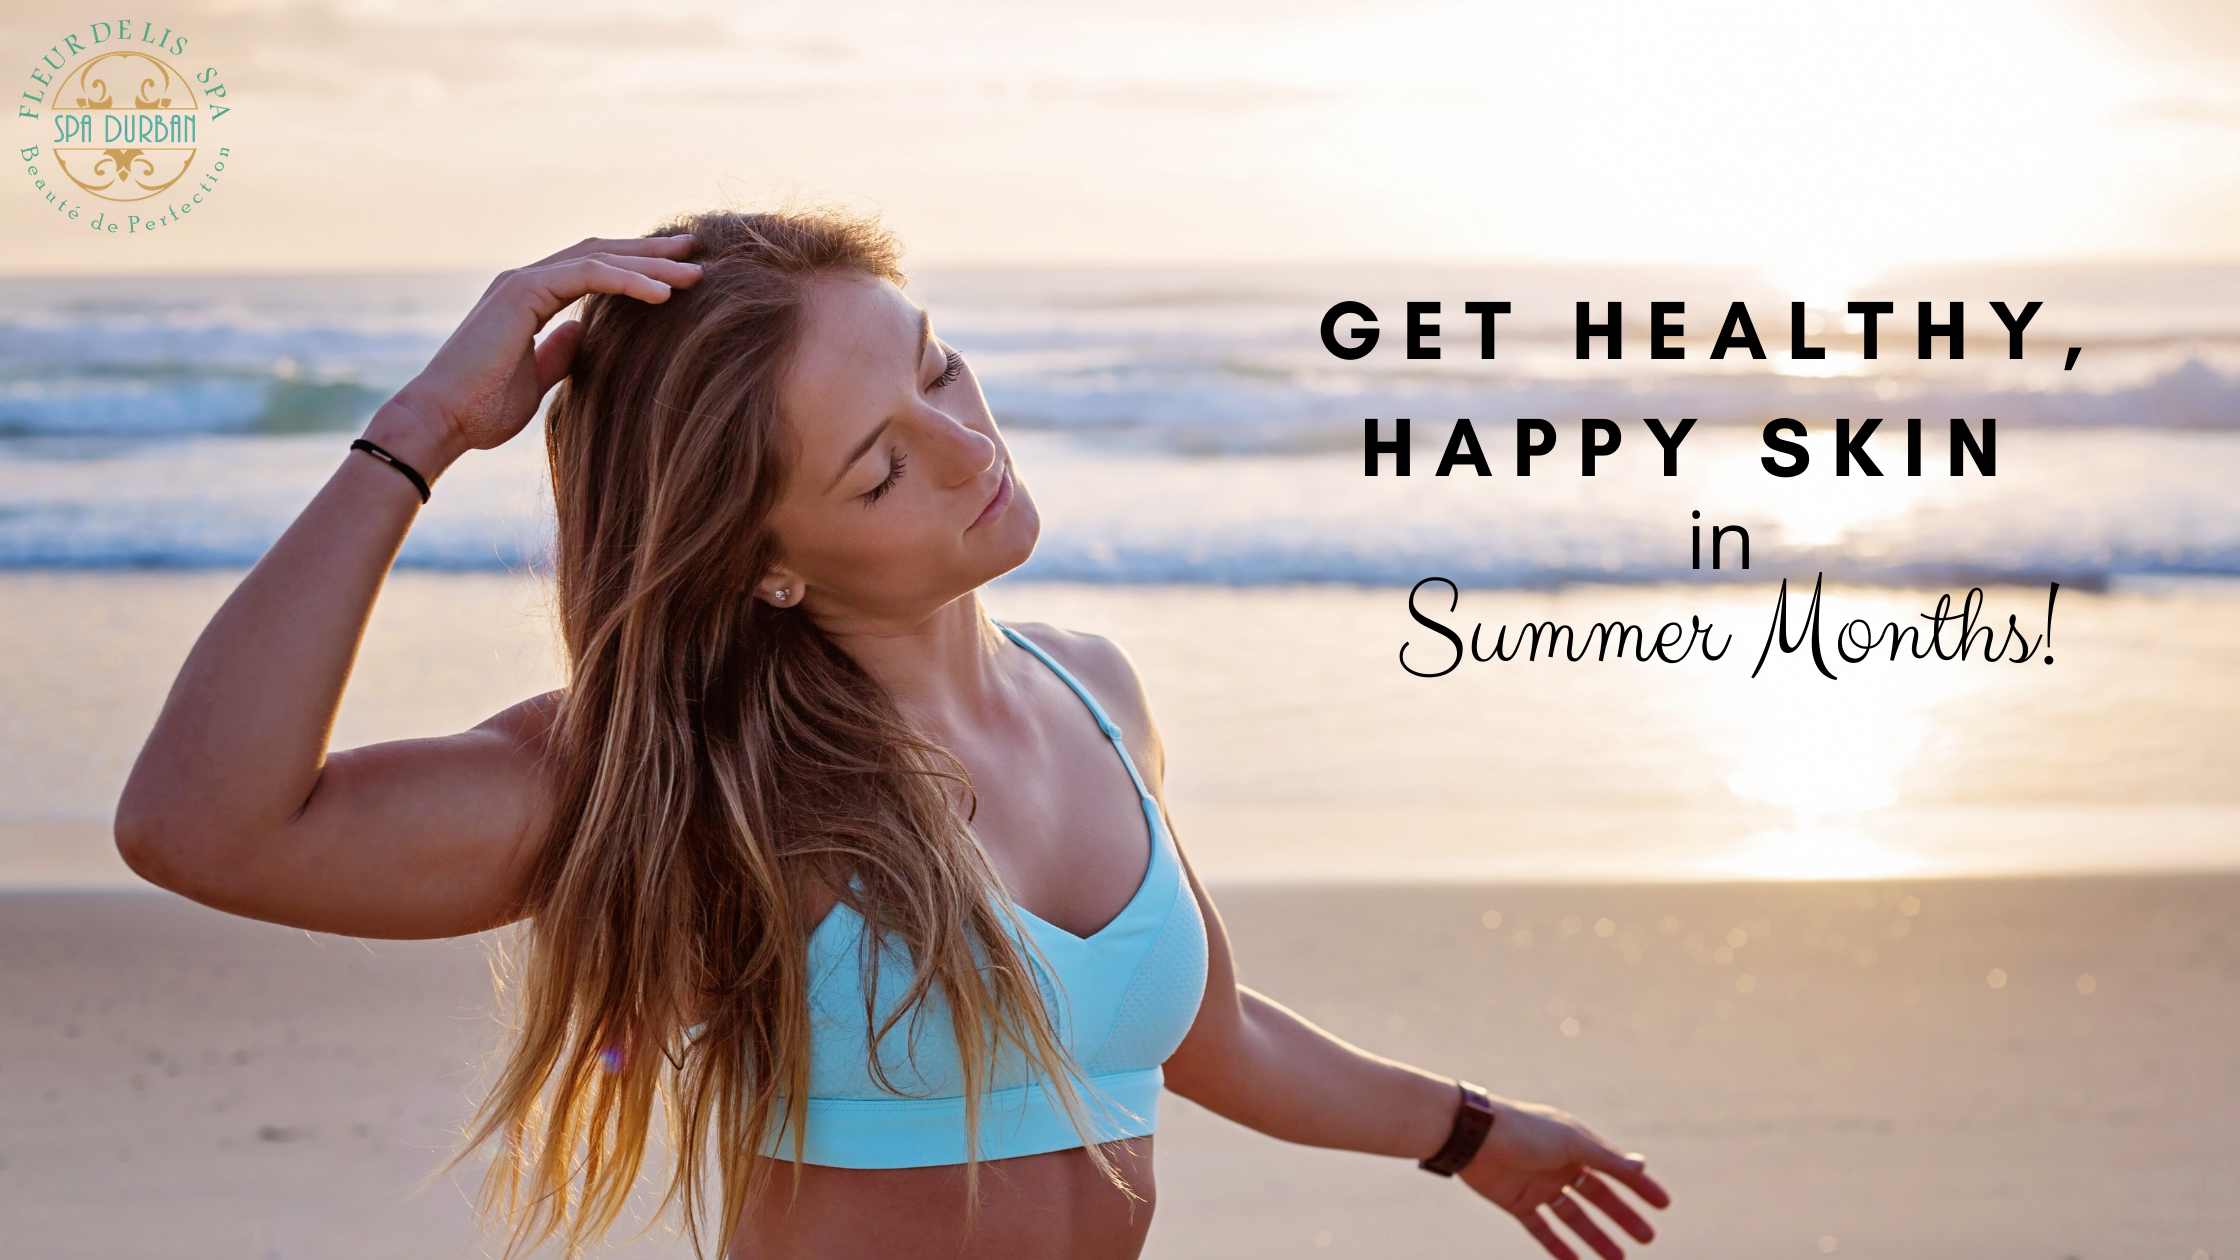 Get Healthy, Happy Skin in Summer Months!